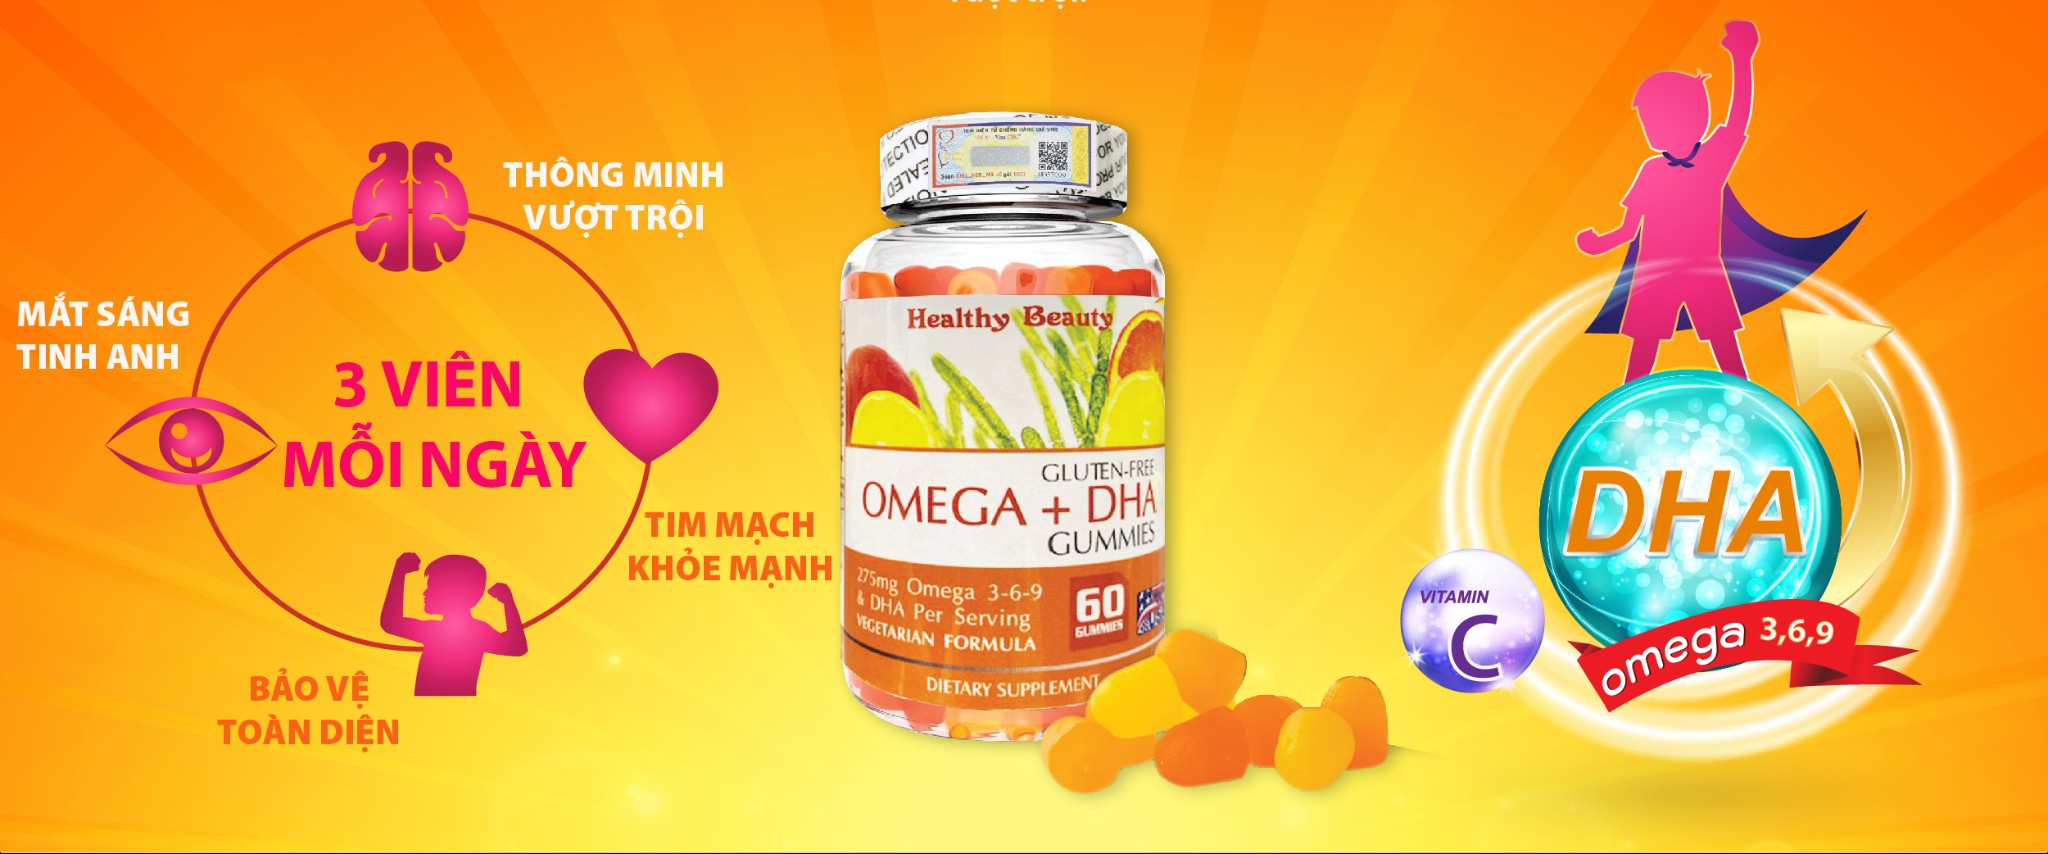 Healthy Beauty Omega DHA Gummies 60 viên Dành cho bé 